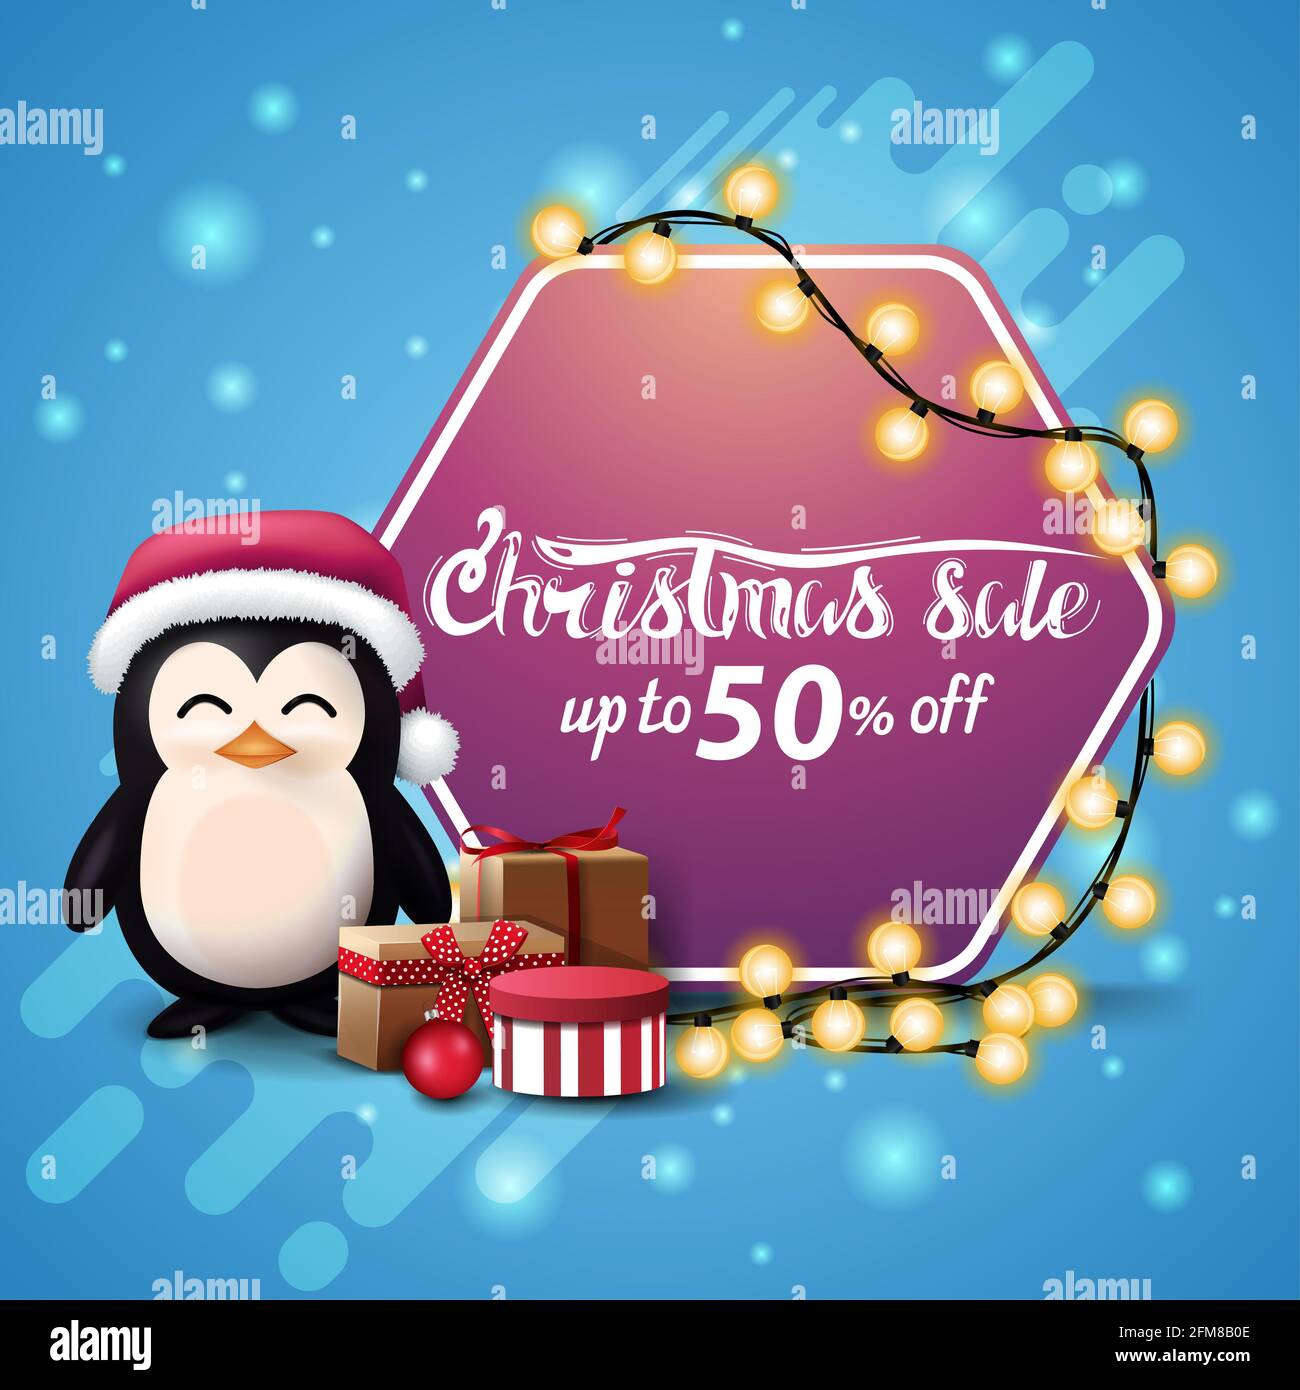 Solde de Noël, jusqu'à 50 $ de rabais, bannière carrée bleue avec guirlande enveloppée de panneau hexagonal rose, pingouin en chapeau du Père Noël avec cadeaux et arbre de Noël Banque D'Images